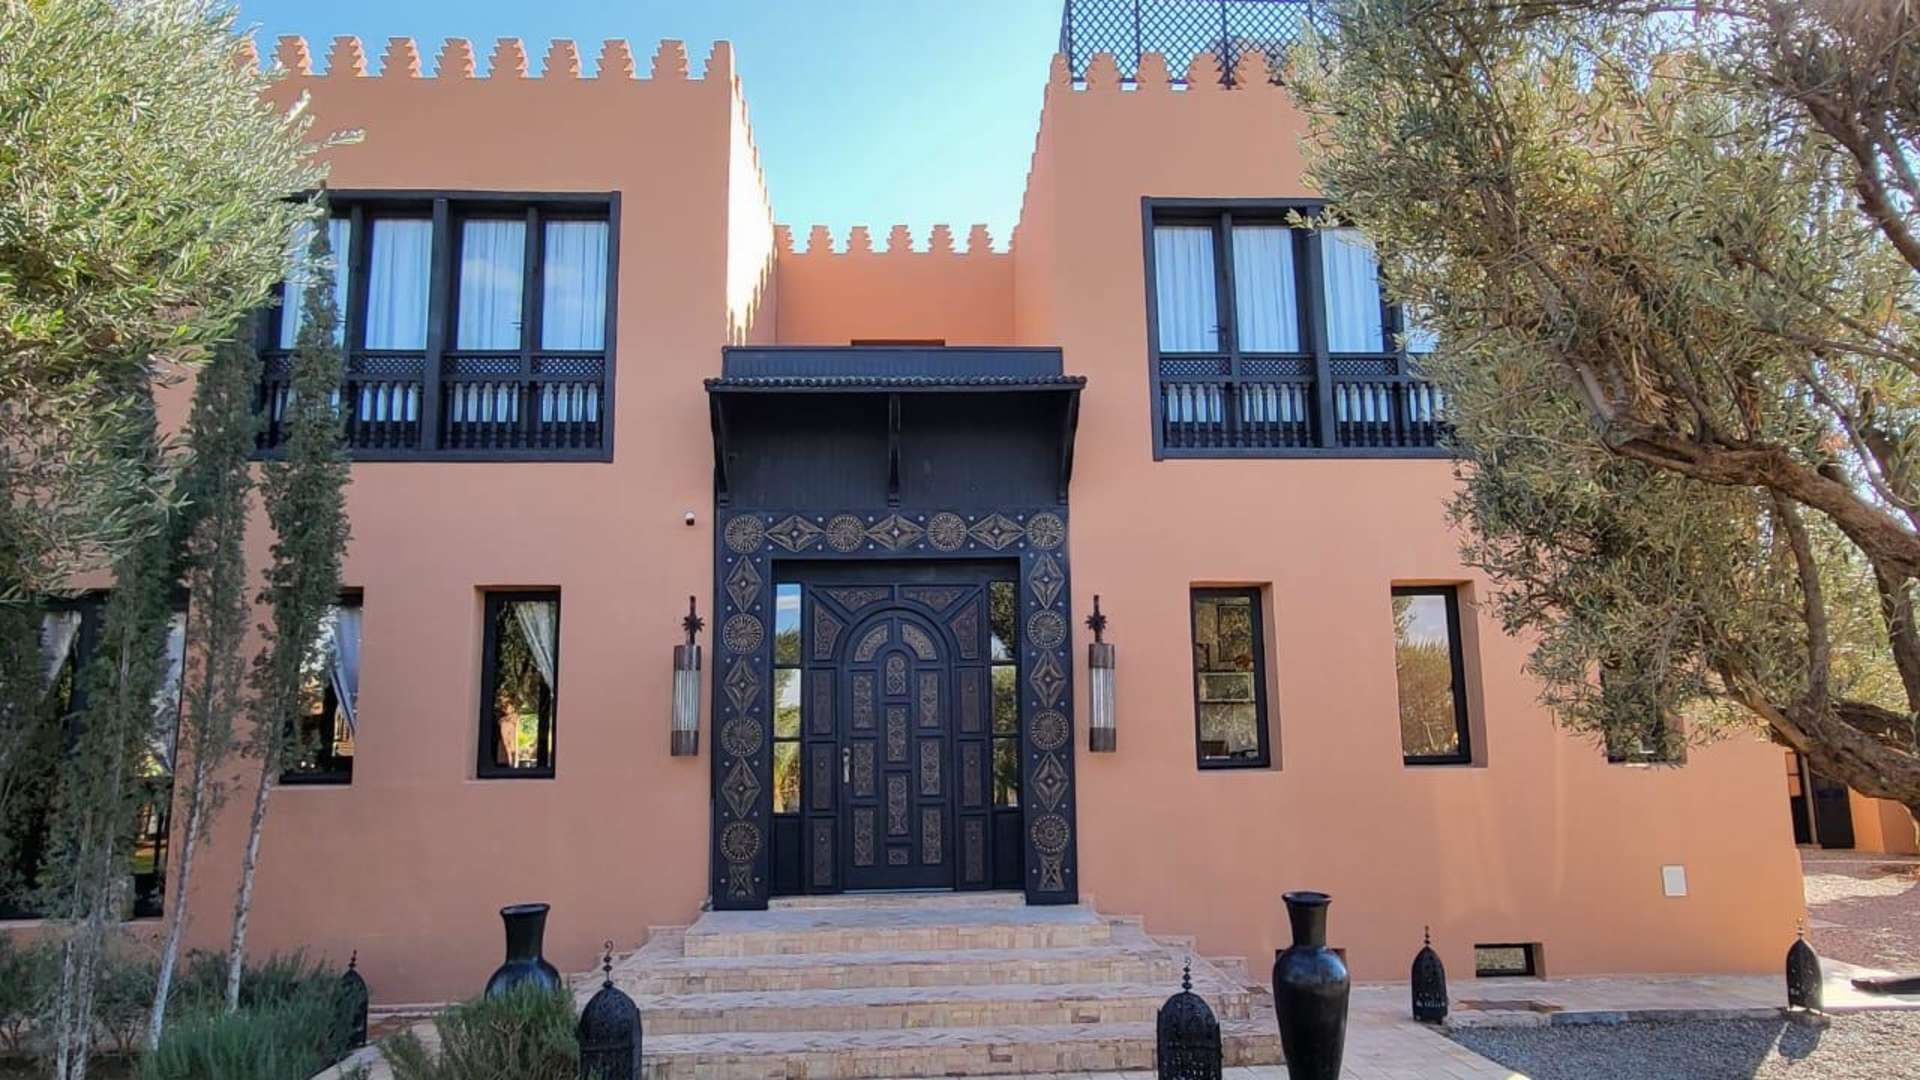 Location de vacances,Villa,Bienvenue à cette maison d'hôtes exclusive à Marrakech, offrant six suites somptueuses,Marrakech,Route d'Ouarzazate